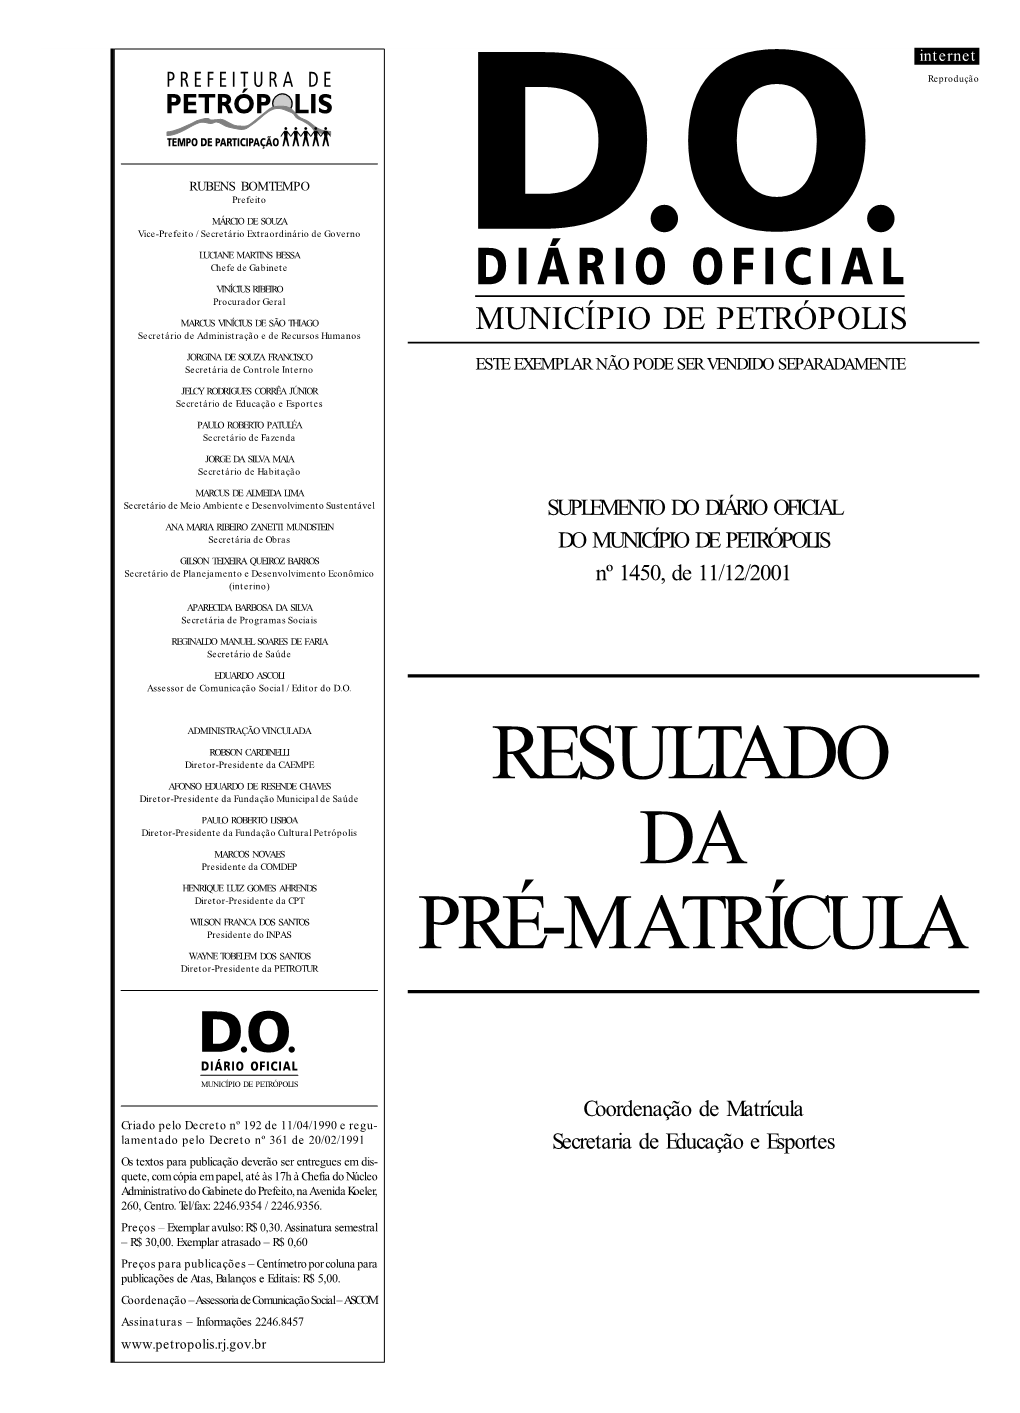 Suplemento Do Diário Oficial Do Município De Petrópolis 11/12/2001